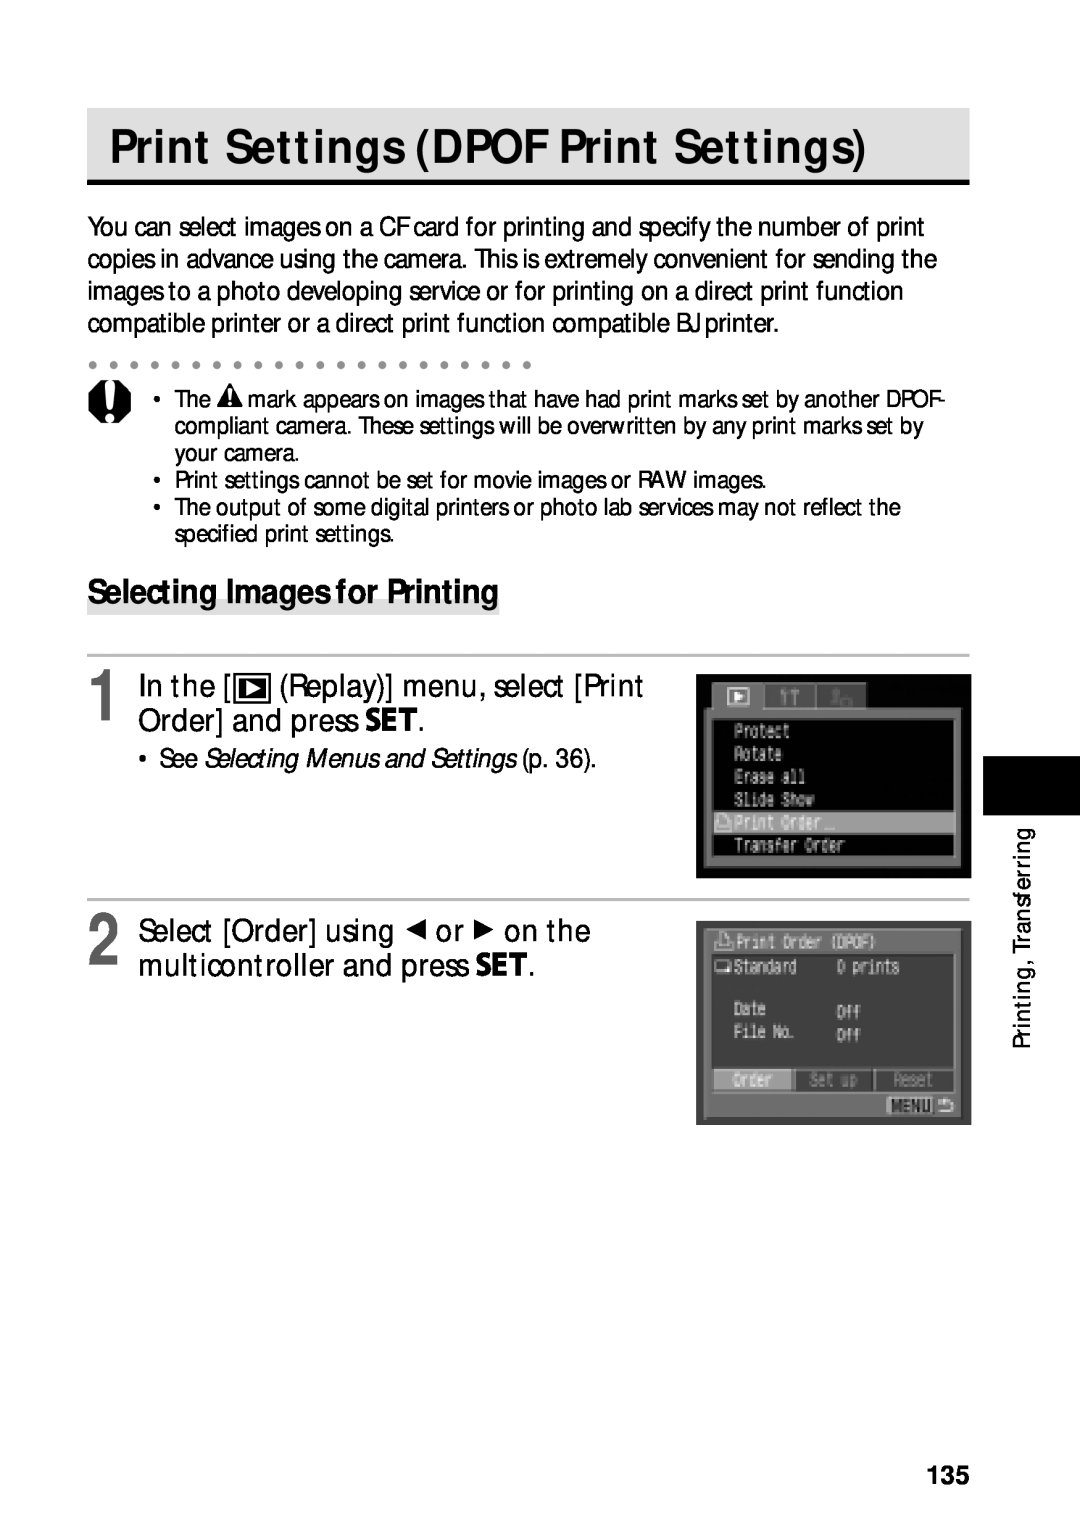 Canon PowerShot S45 Print Settings DPOF Print Settings, Selecting Images for Printing, See Selecting Menus and Settings p 